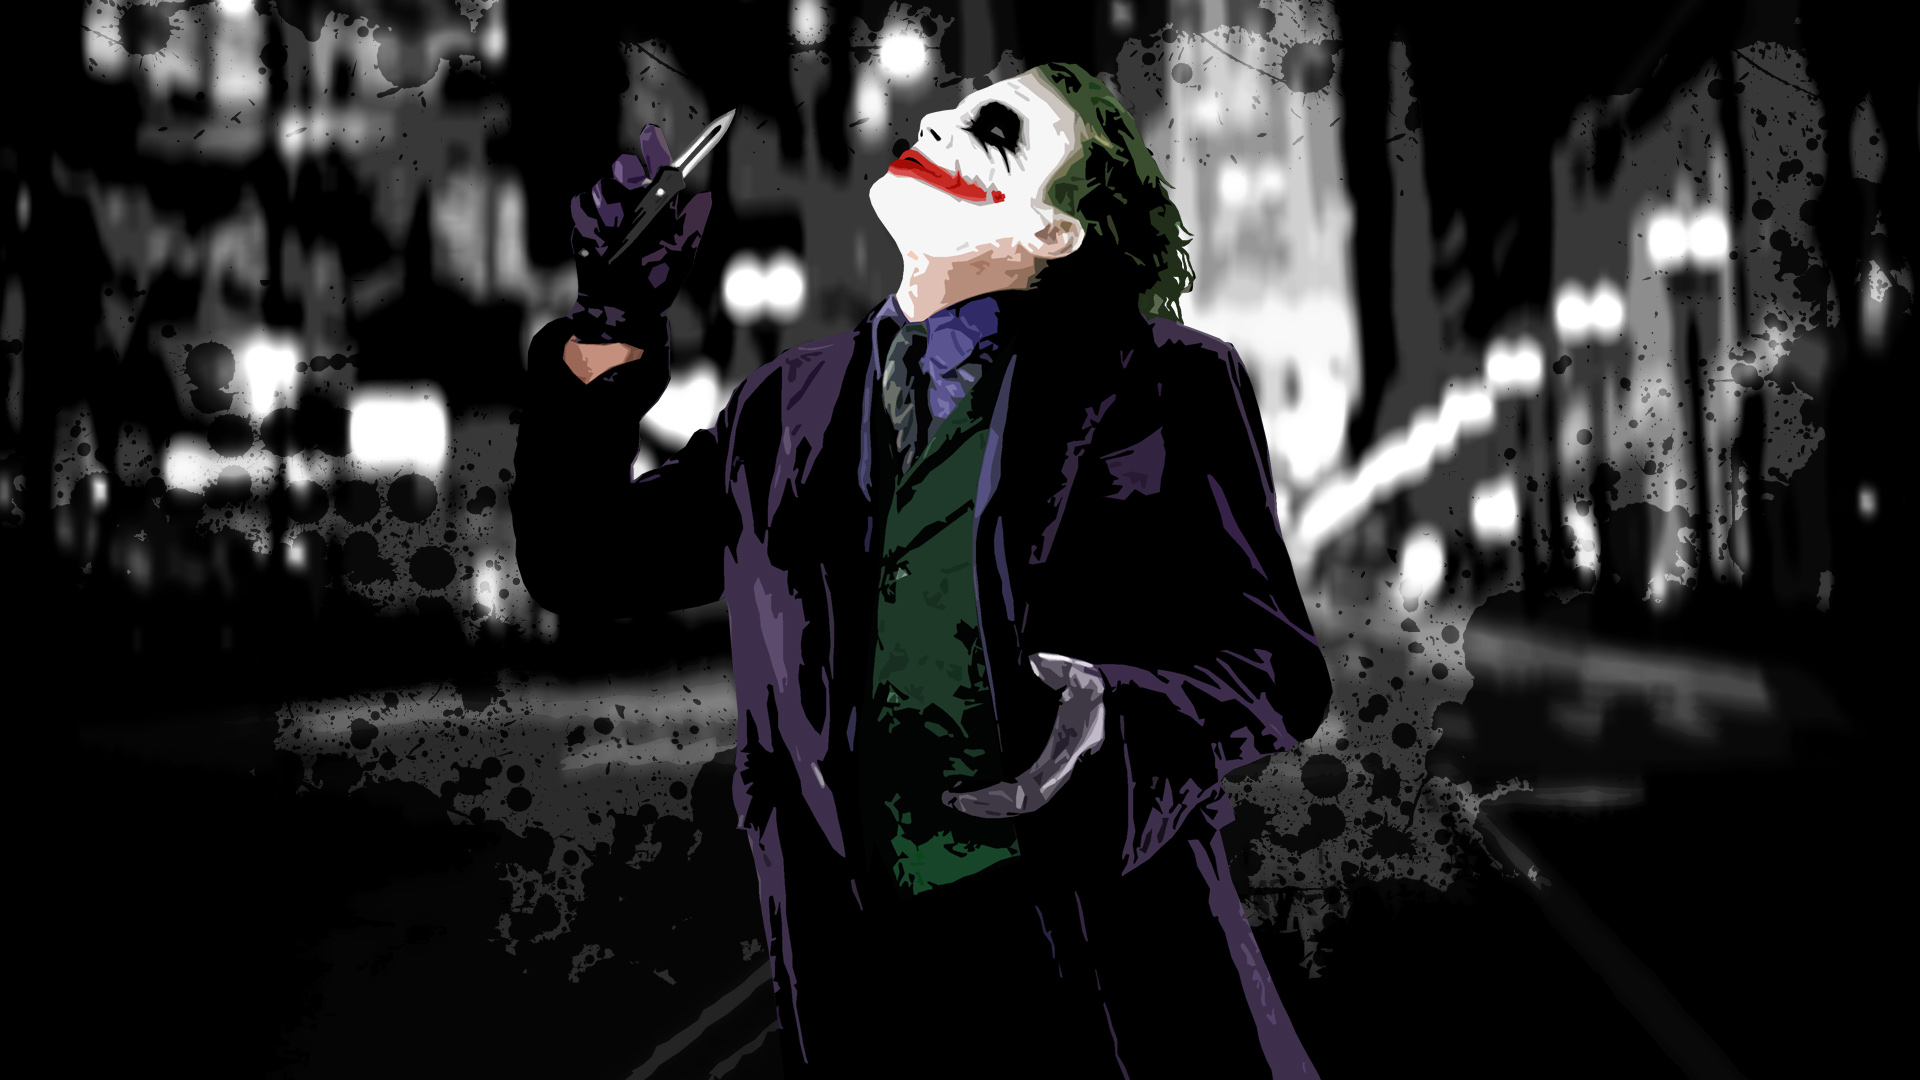 Joker - Download Joker Wallpaper 3d - 1920x1080 Wallpaper 